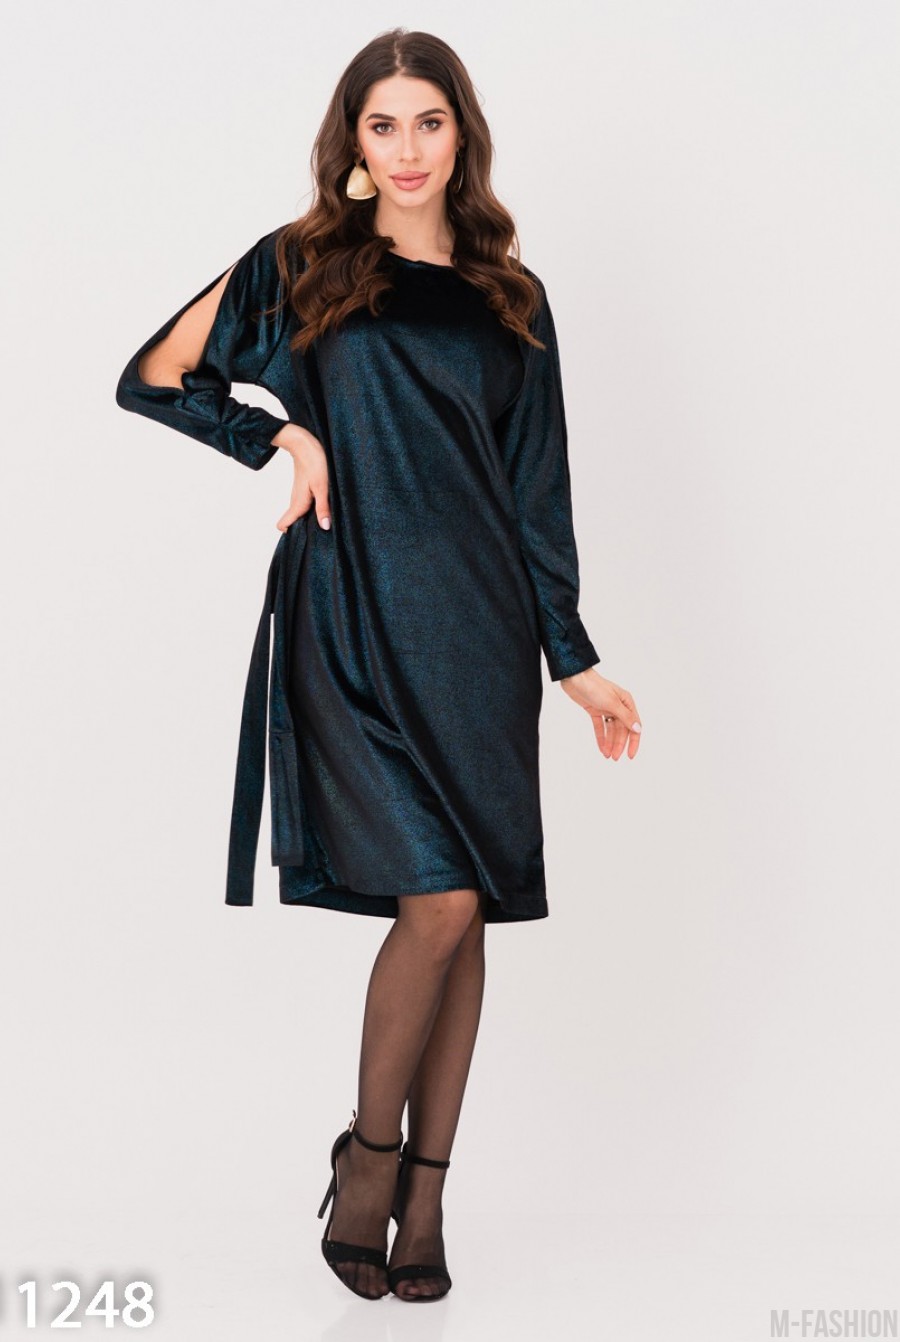 Черно-голубое нарядное платье с вырезами на рукавах - Фото 1